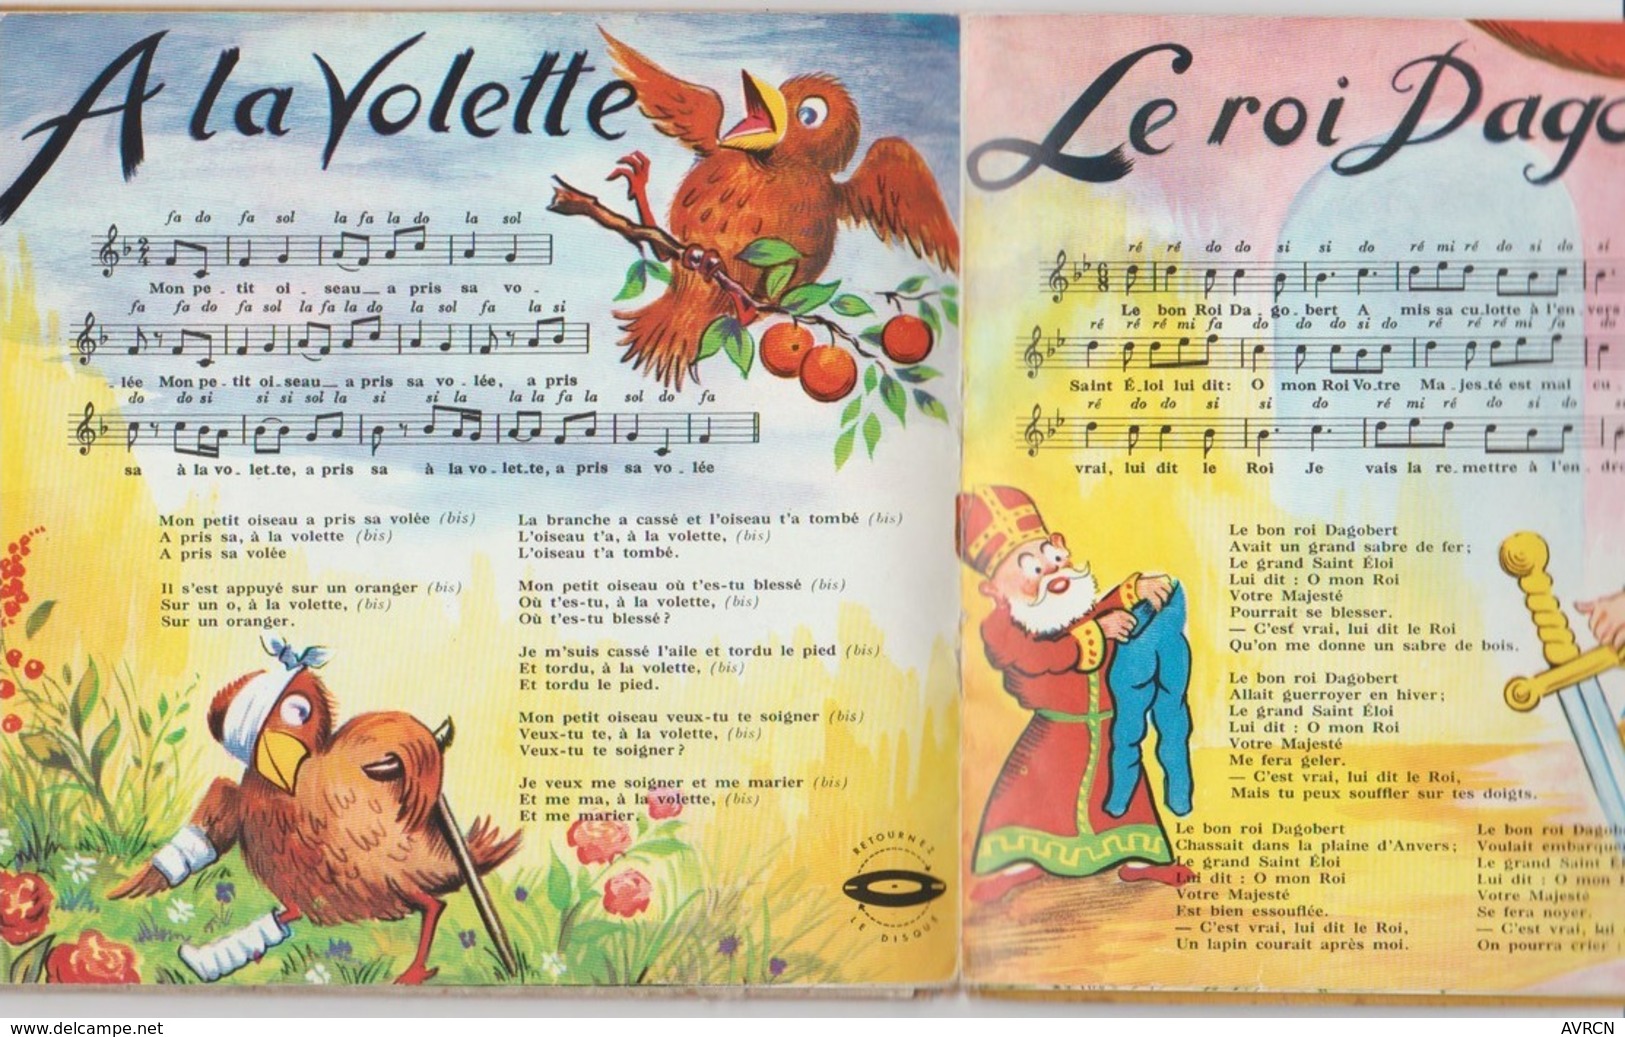 Rondes Et Chansons De France N° 1  Livre Disque / Philips E1E 9100 / 1955 - Kinderlieder